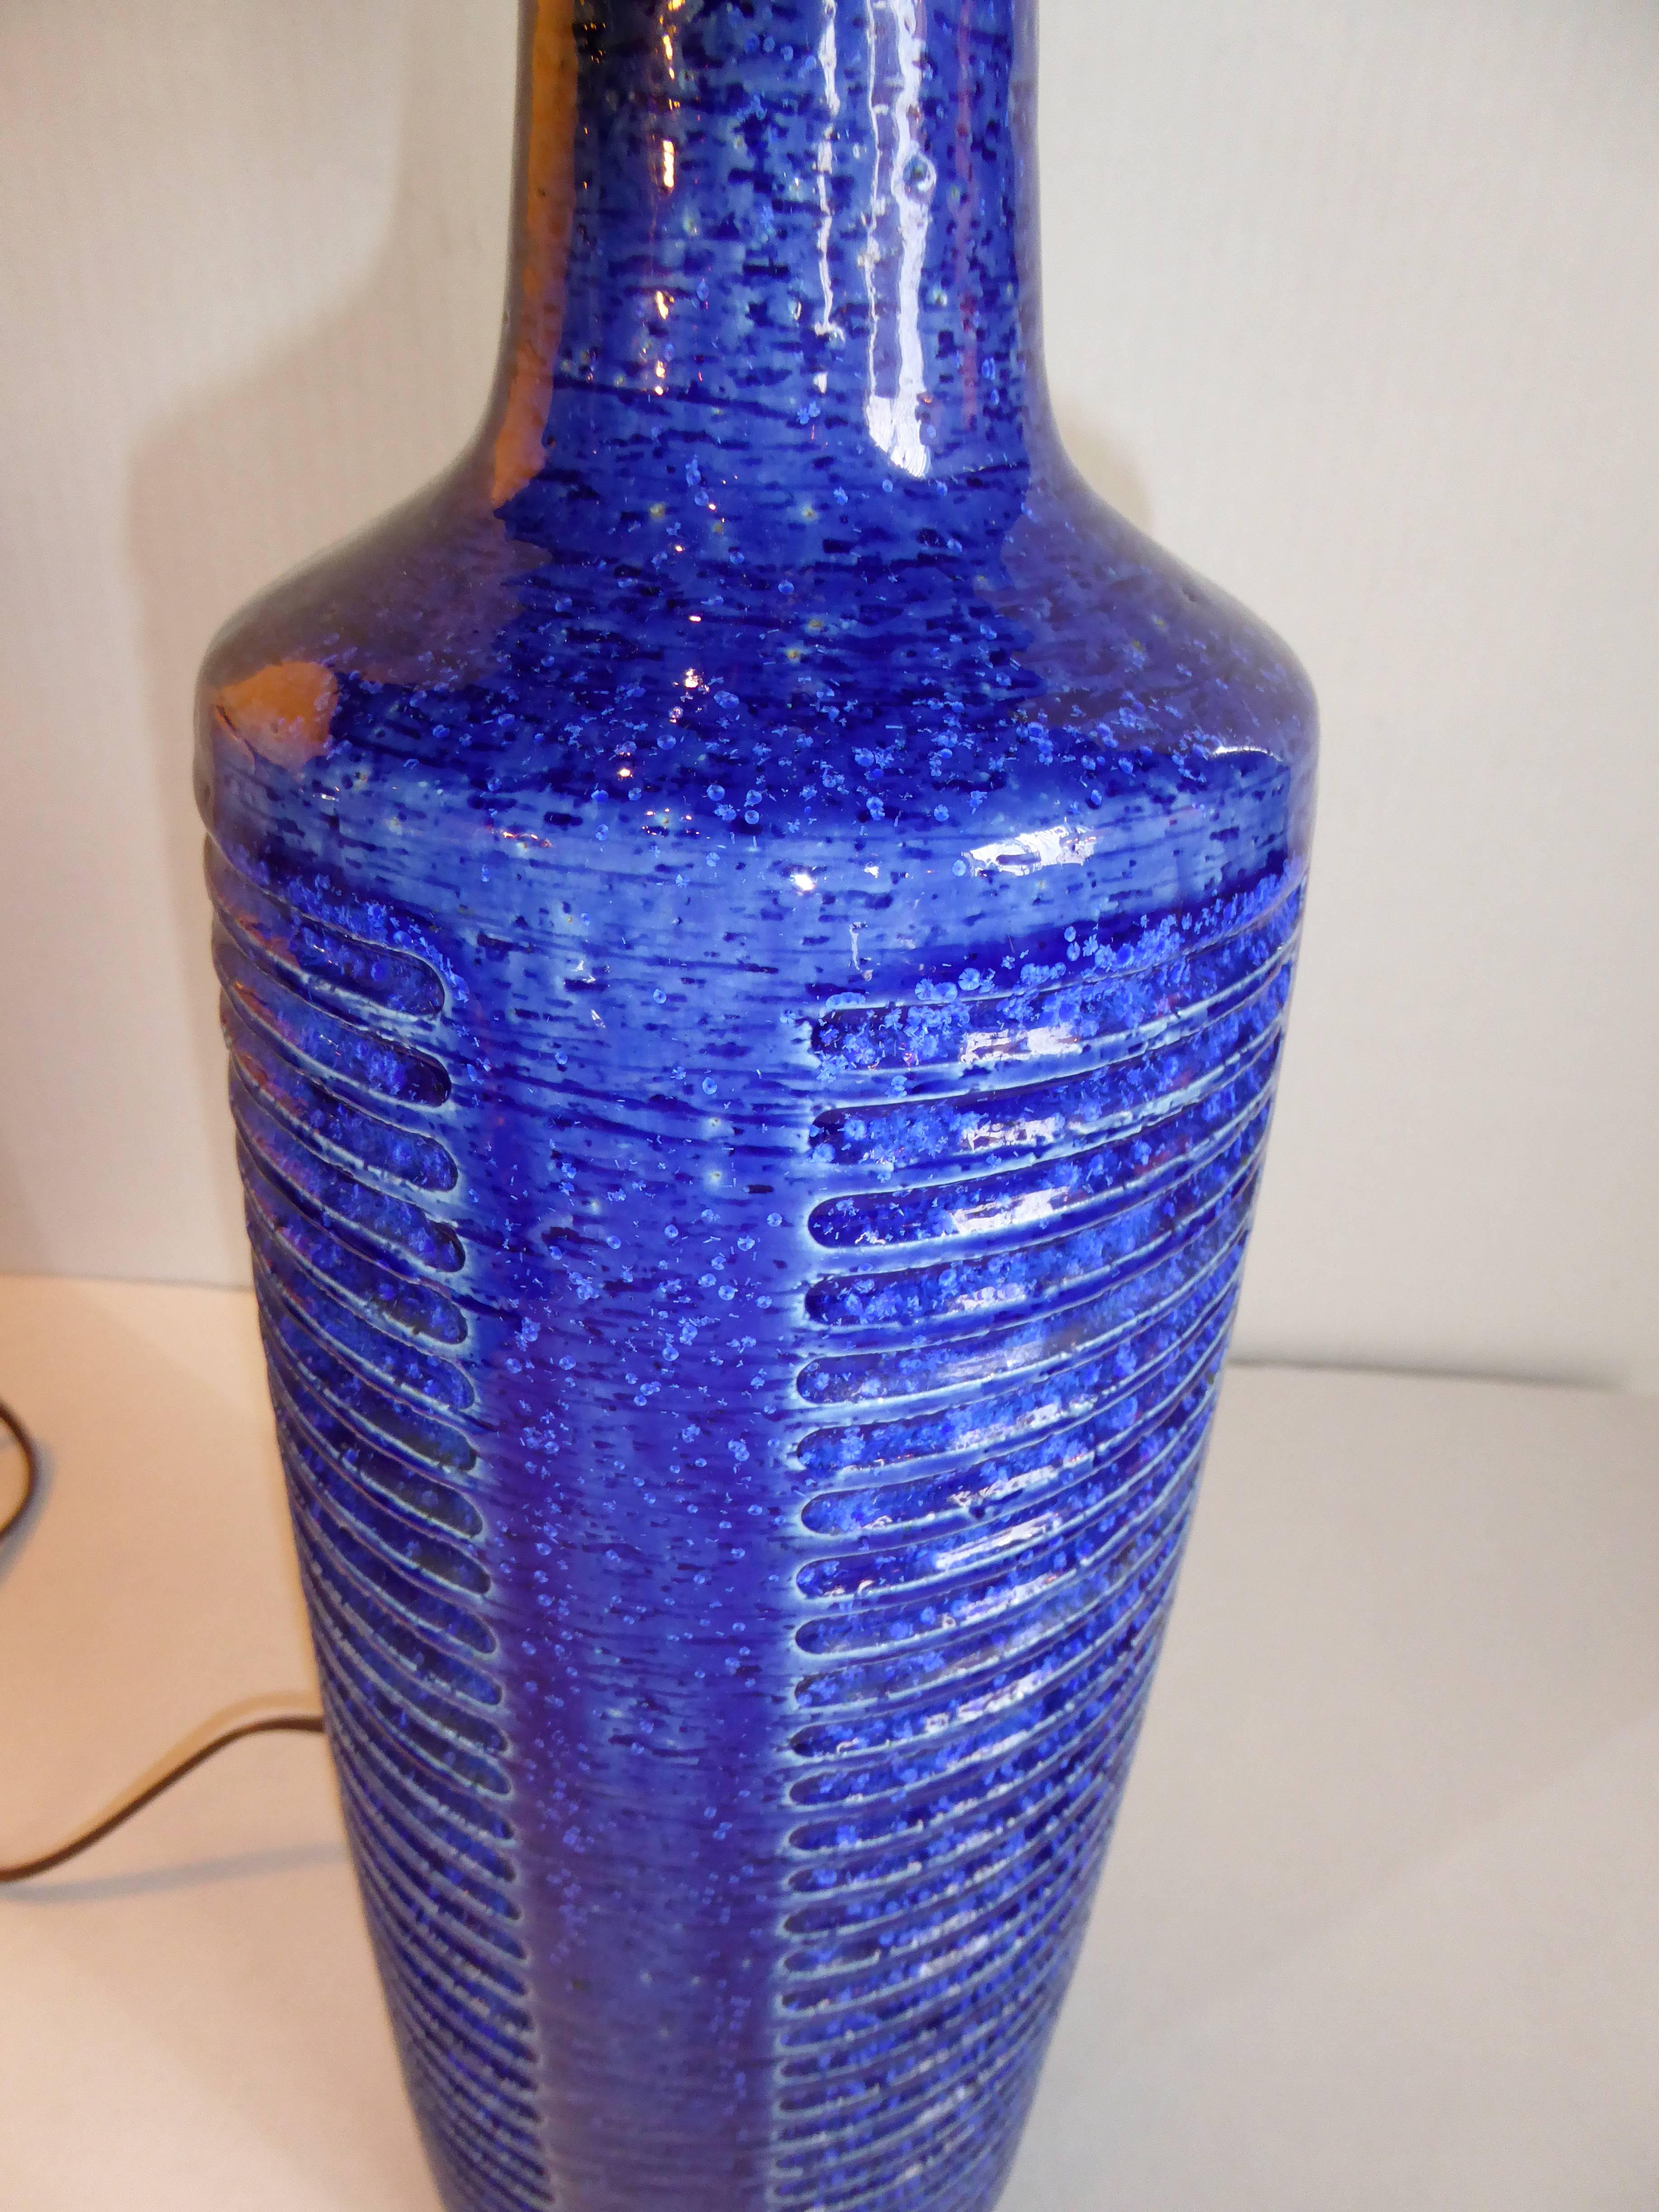 Palshus Blue Glaze Chamotte Pottery Lamp by Per Linnemann Schmidt 1